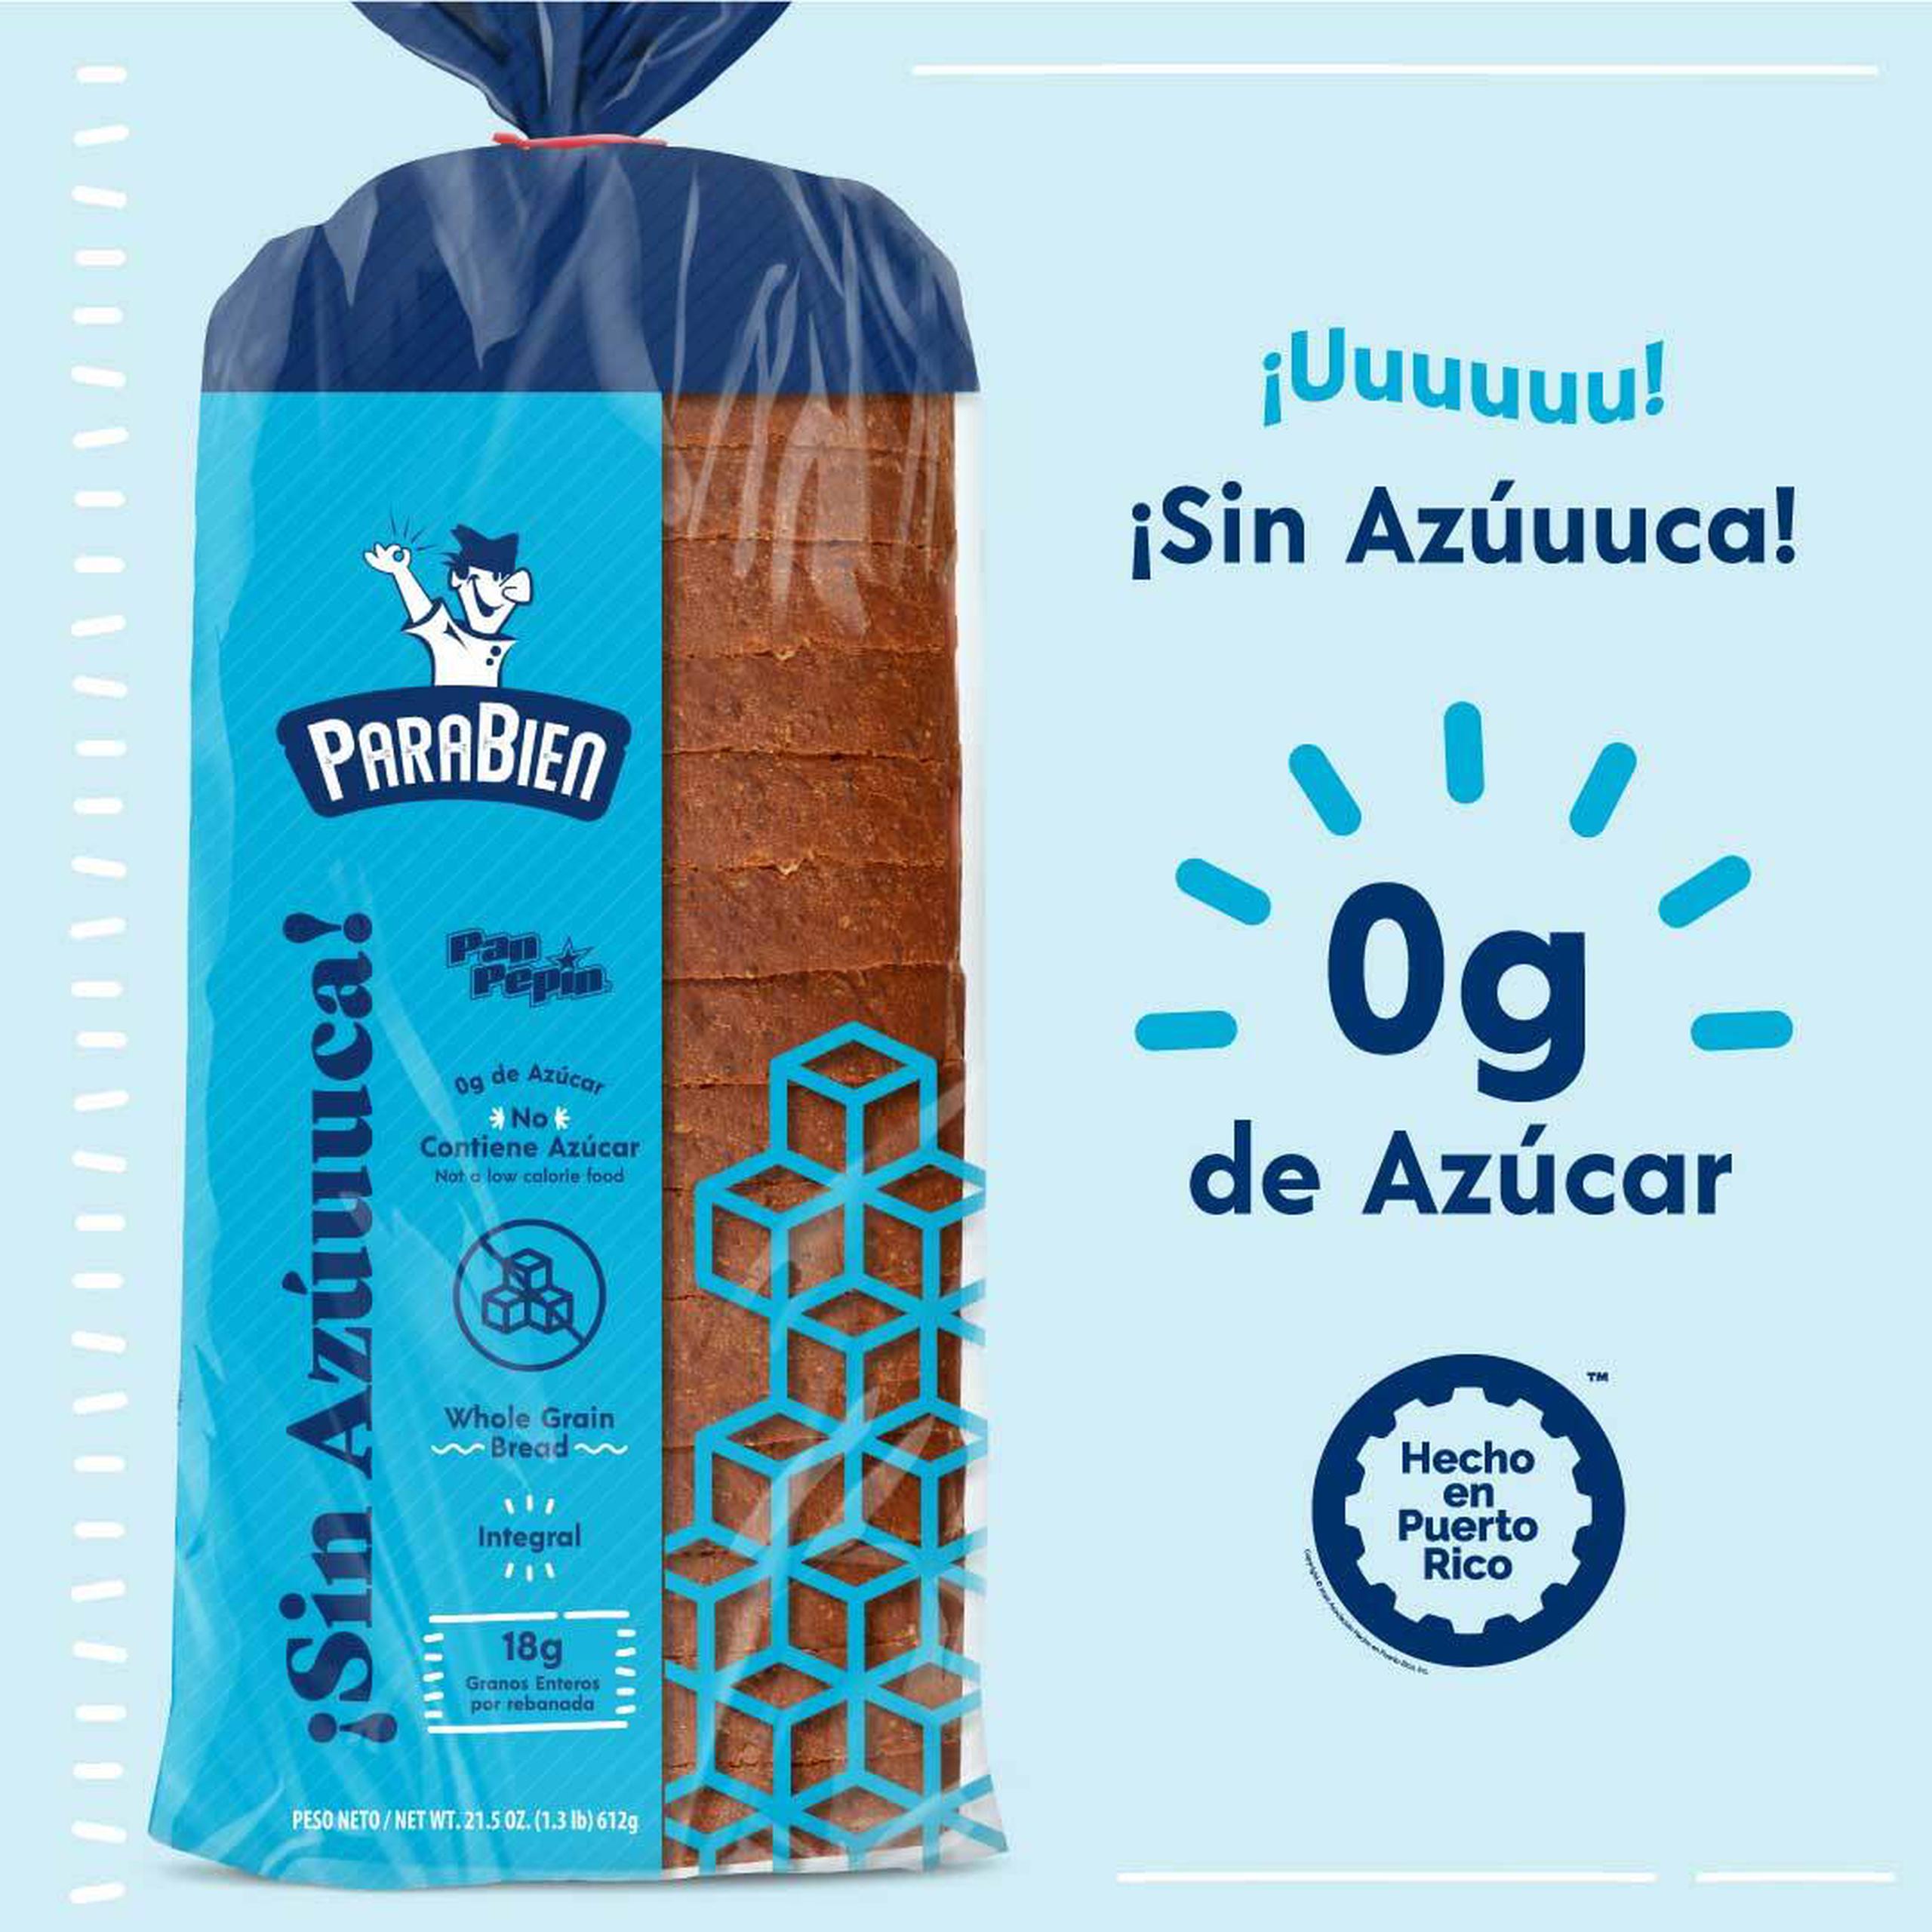 ¡Sin Azúuuca!, al igual que todos los panes que componen la familia de ParaBien de Pan Pepín, se produce 100% en Puerto Rico lo que garantiza su frescura y calidad.